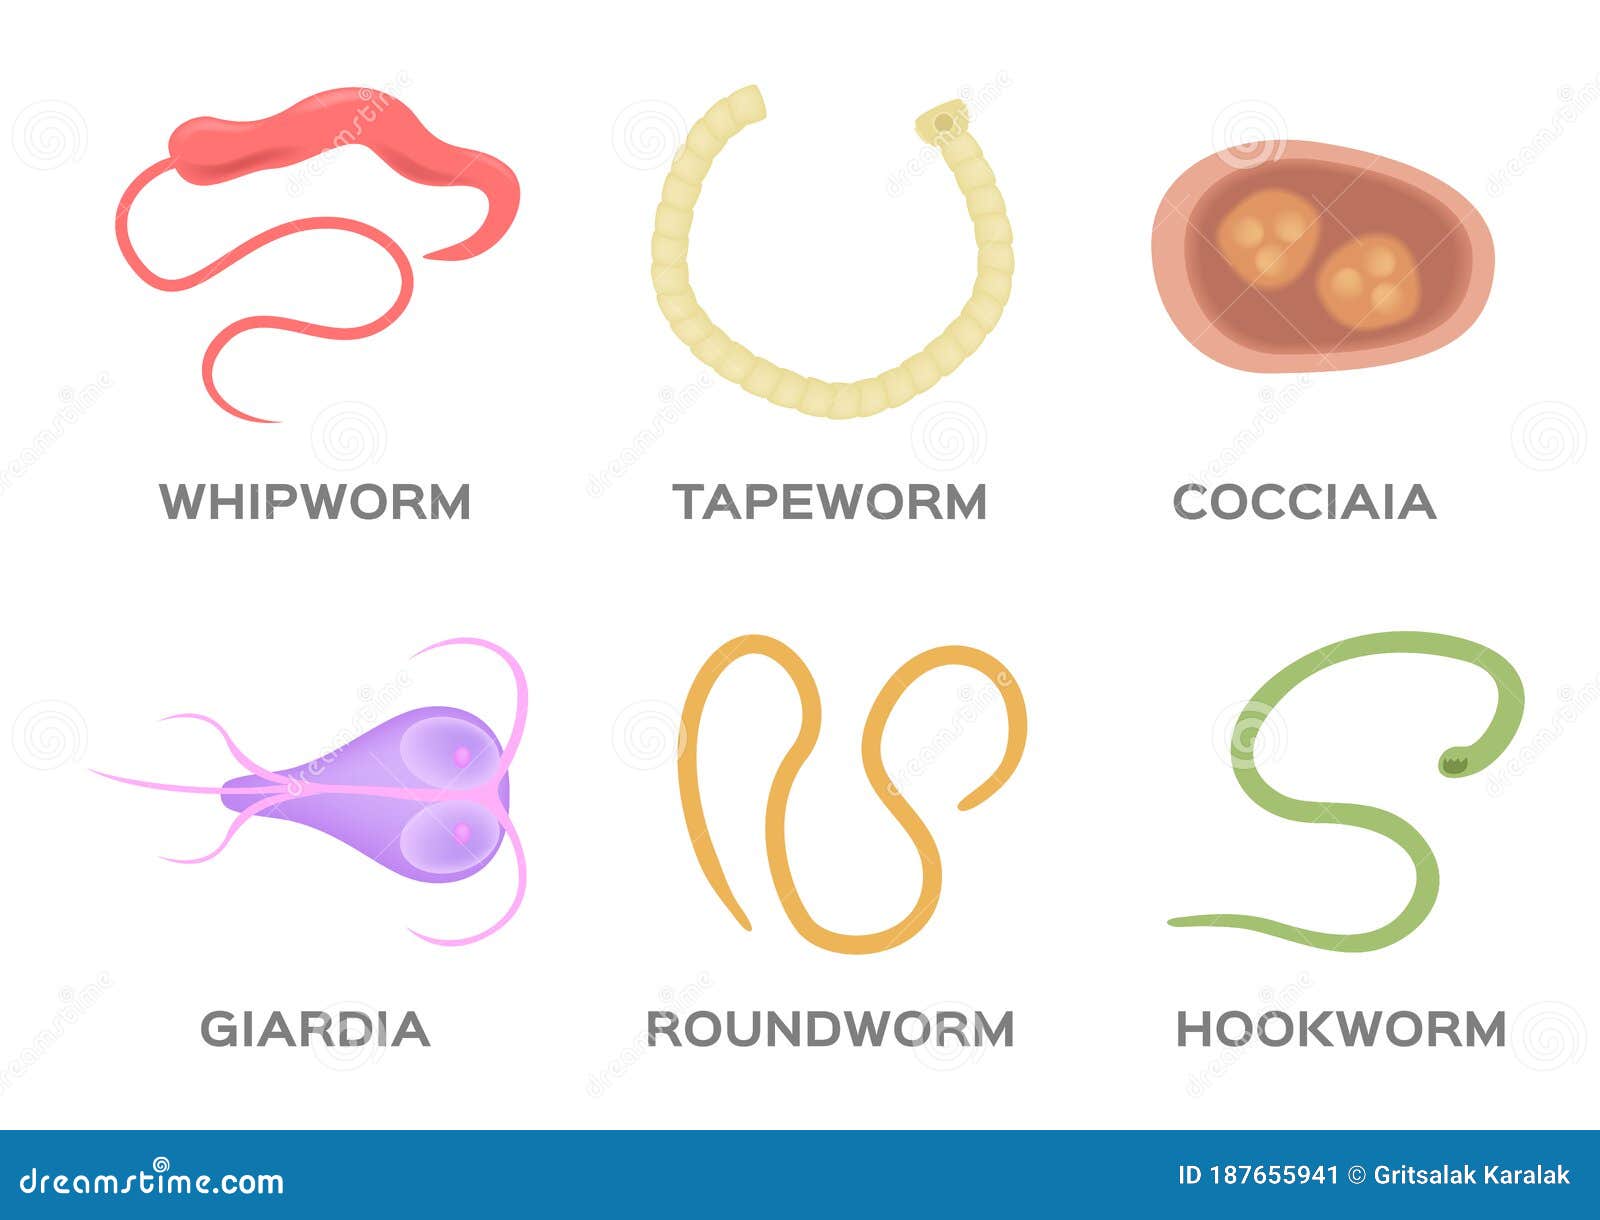 pinworm roundworm